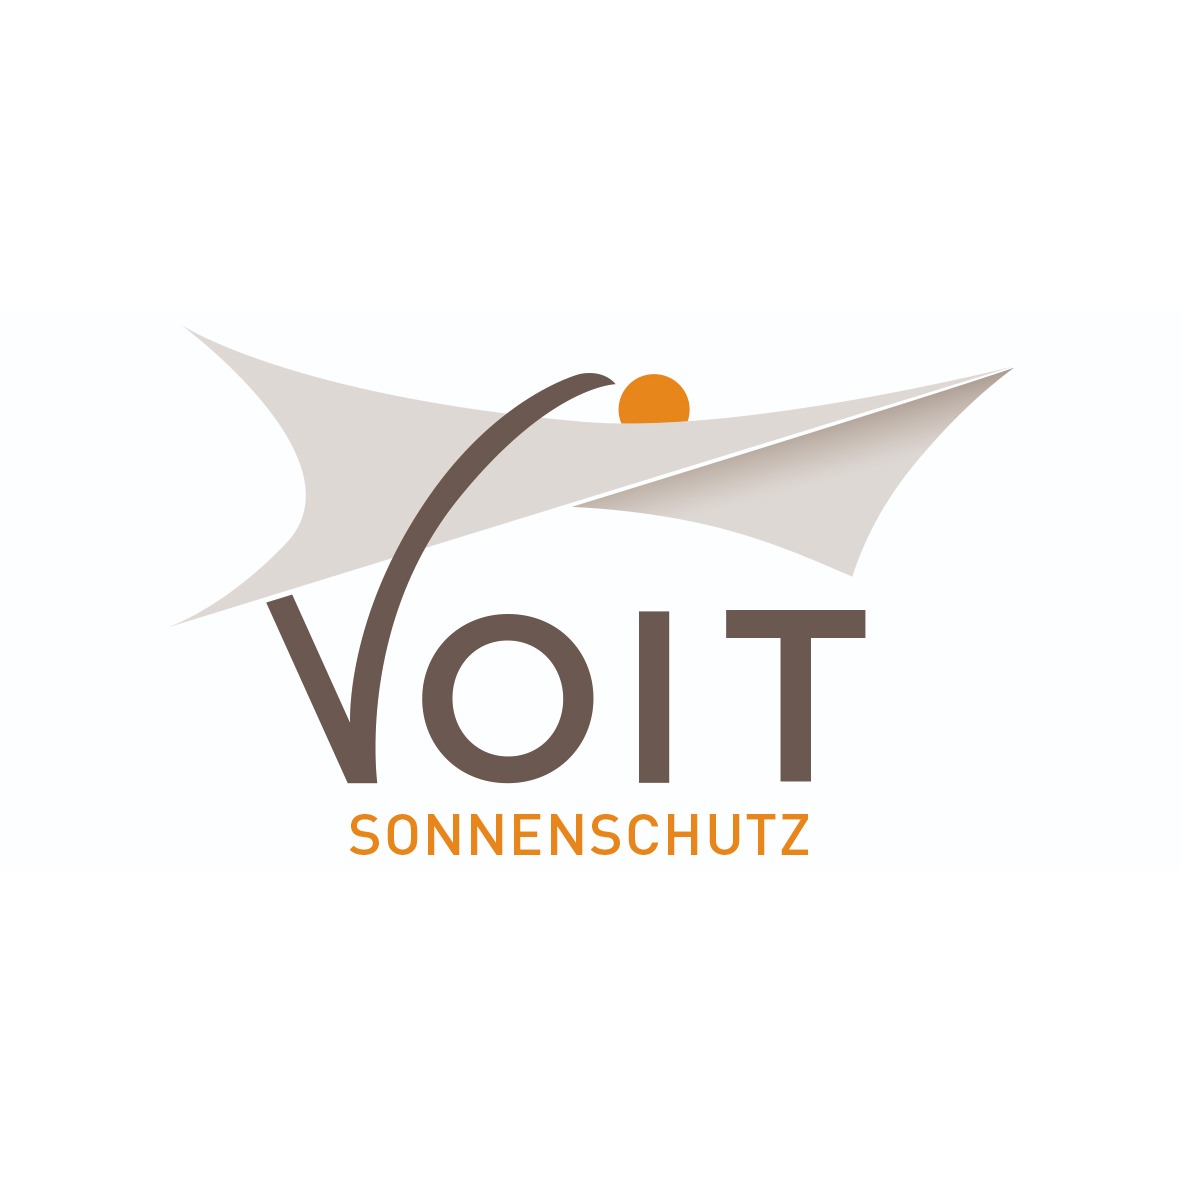 Logo Voit Sonnenschutz